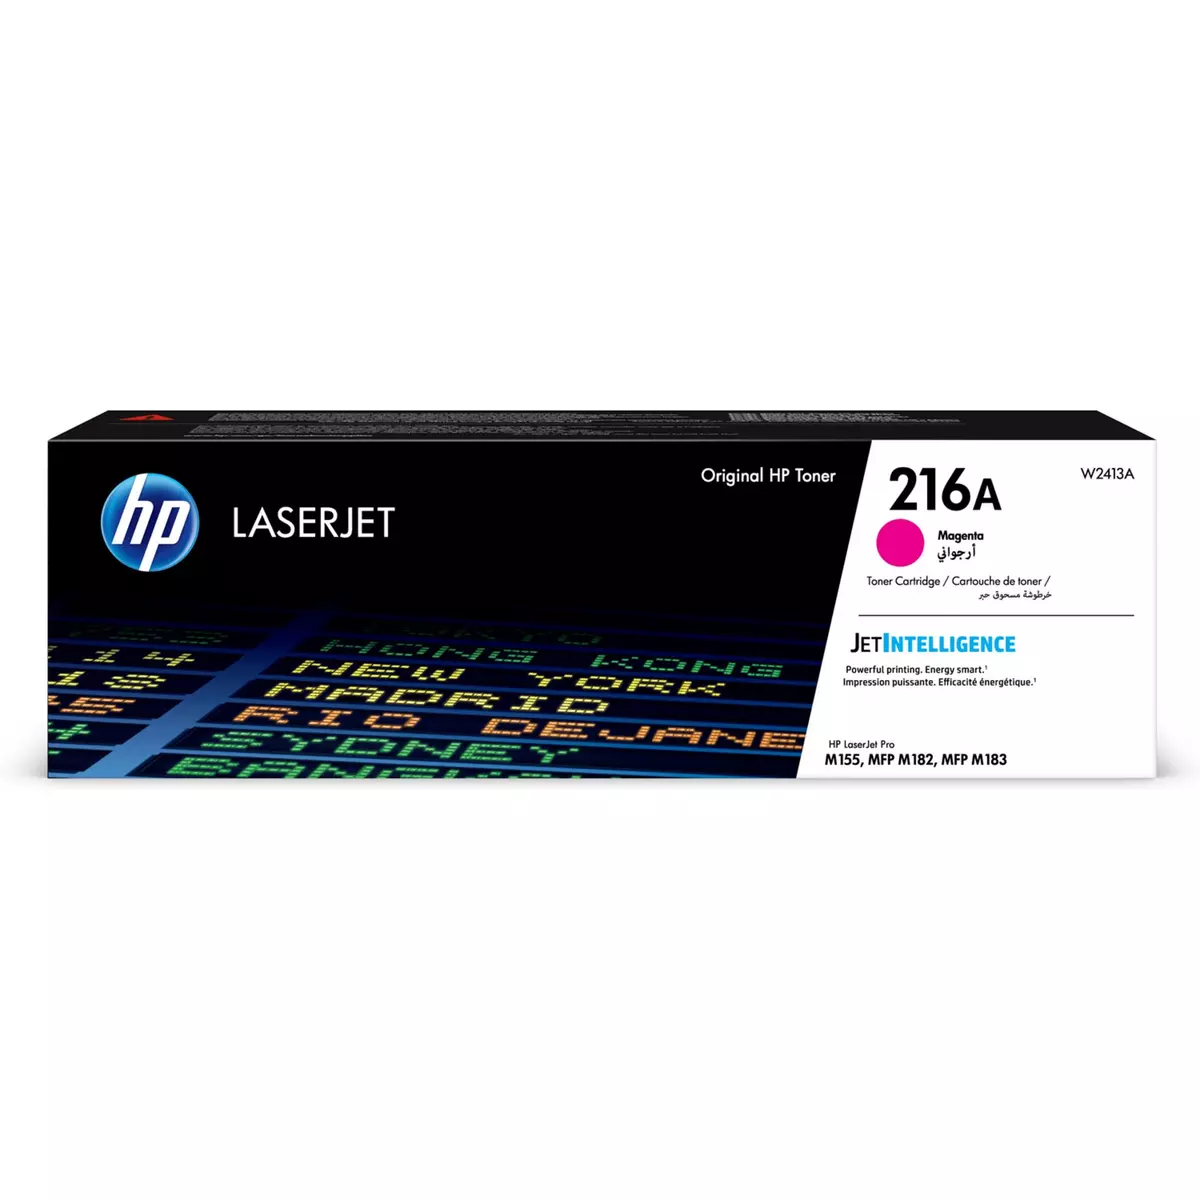 HP Cartouche imprimante TONER LASER N216A - Magenta